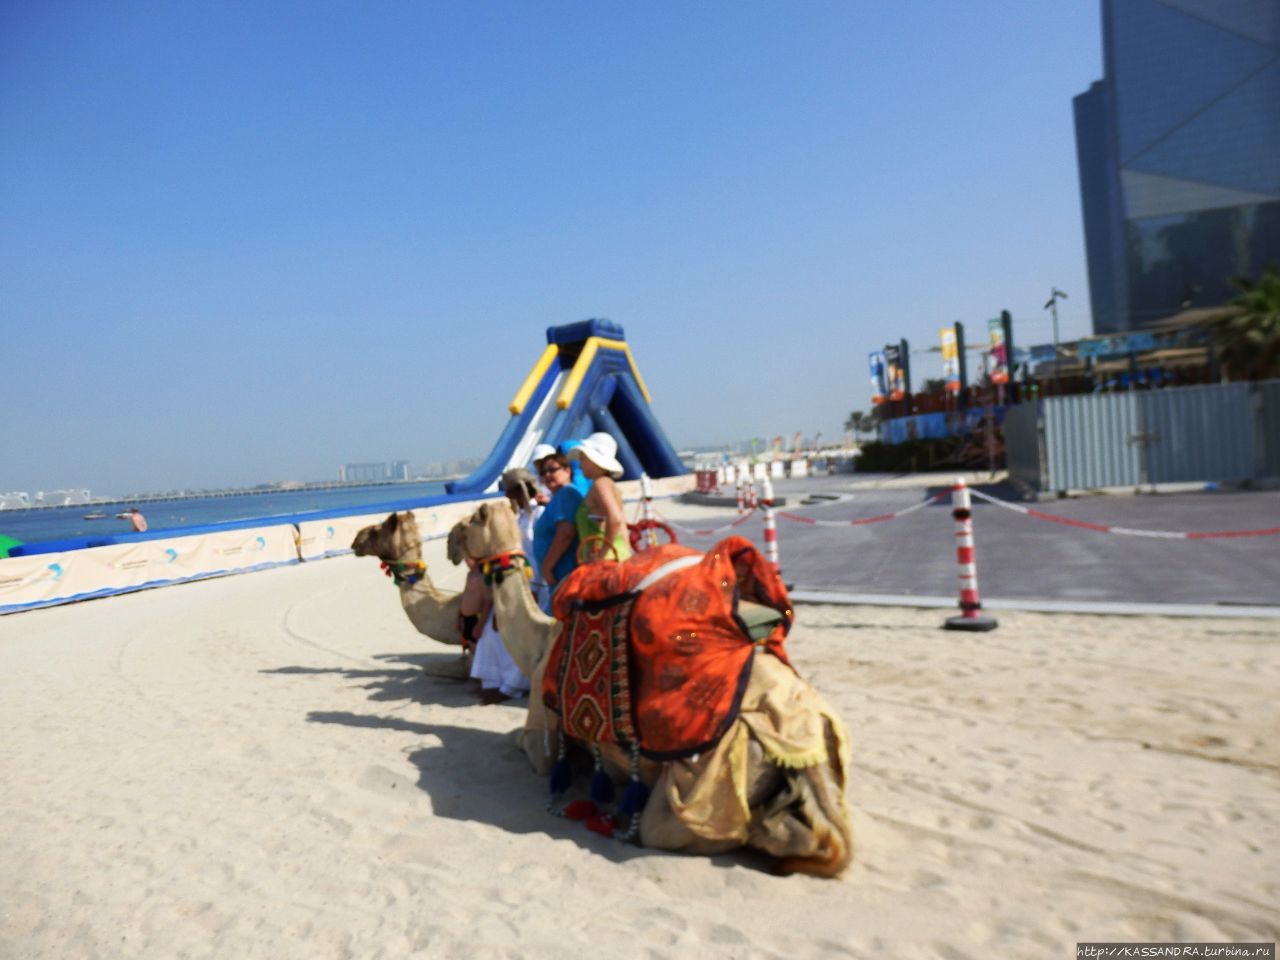 Бесплатный пляж в Дубае. Джумейра Бич Резиденс Дубай, ОАЭ